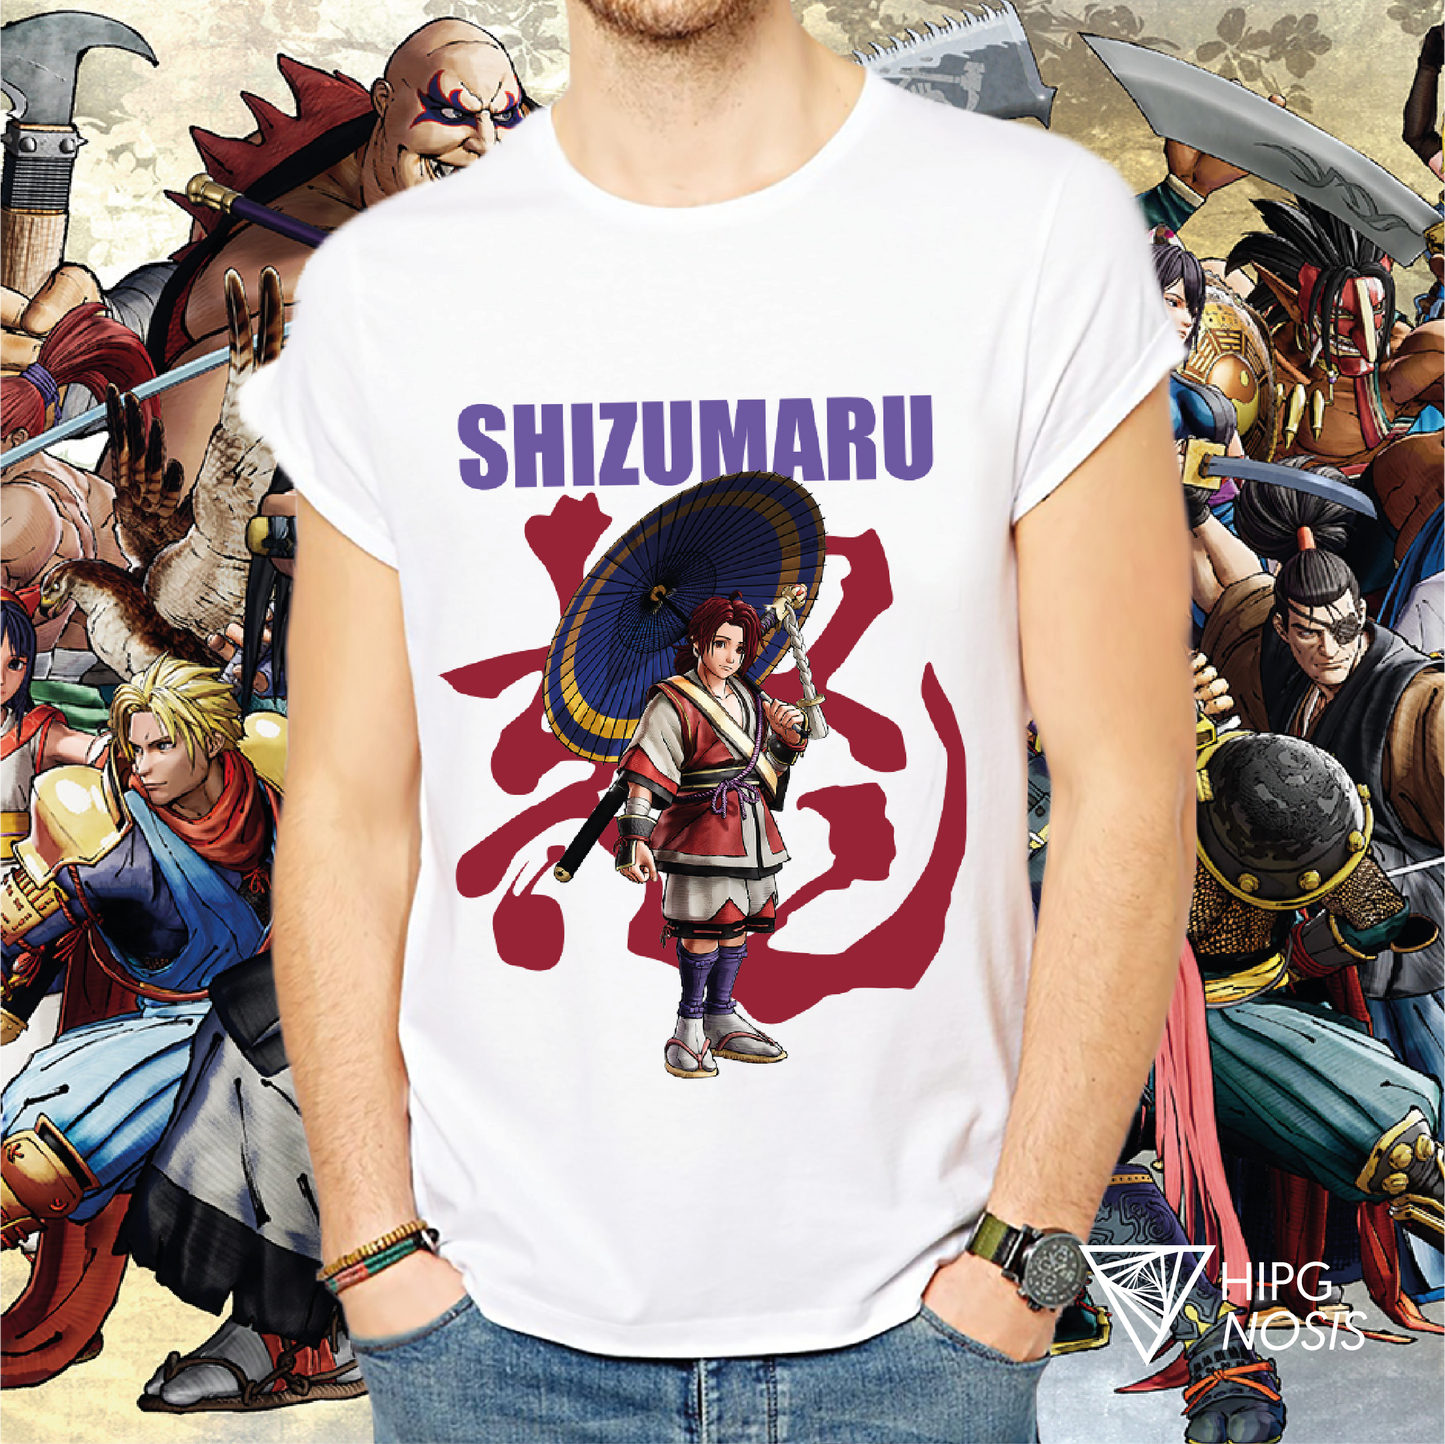 Samurai Shodow Shizumaru 01 - Hipgnosis